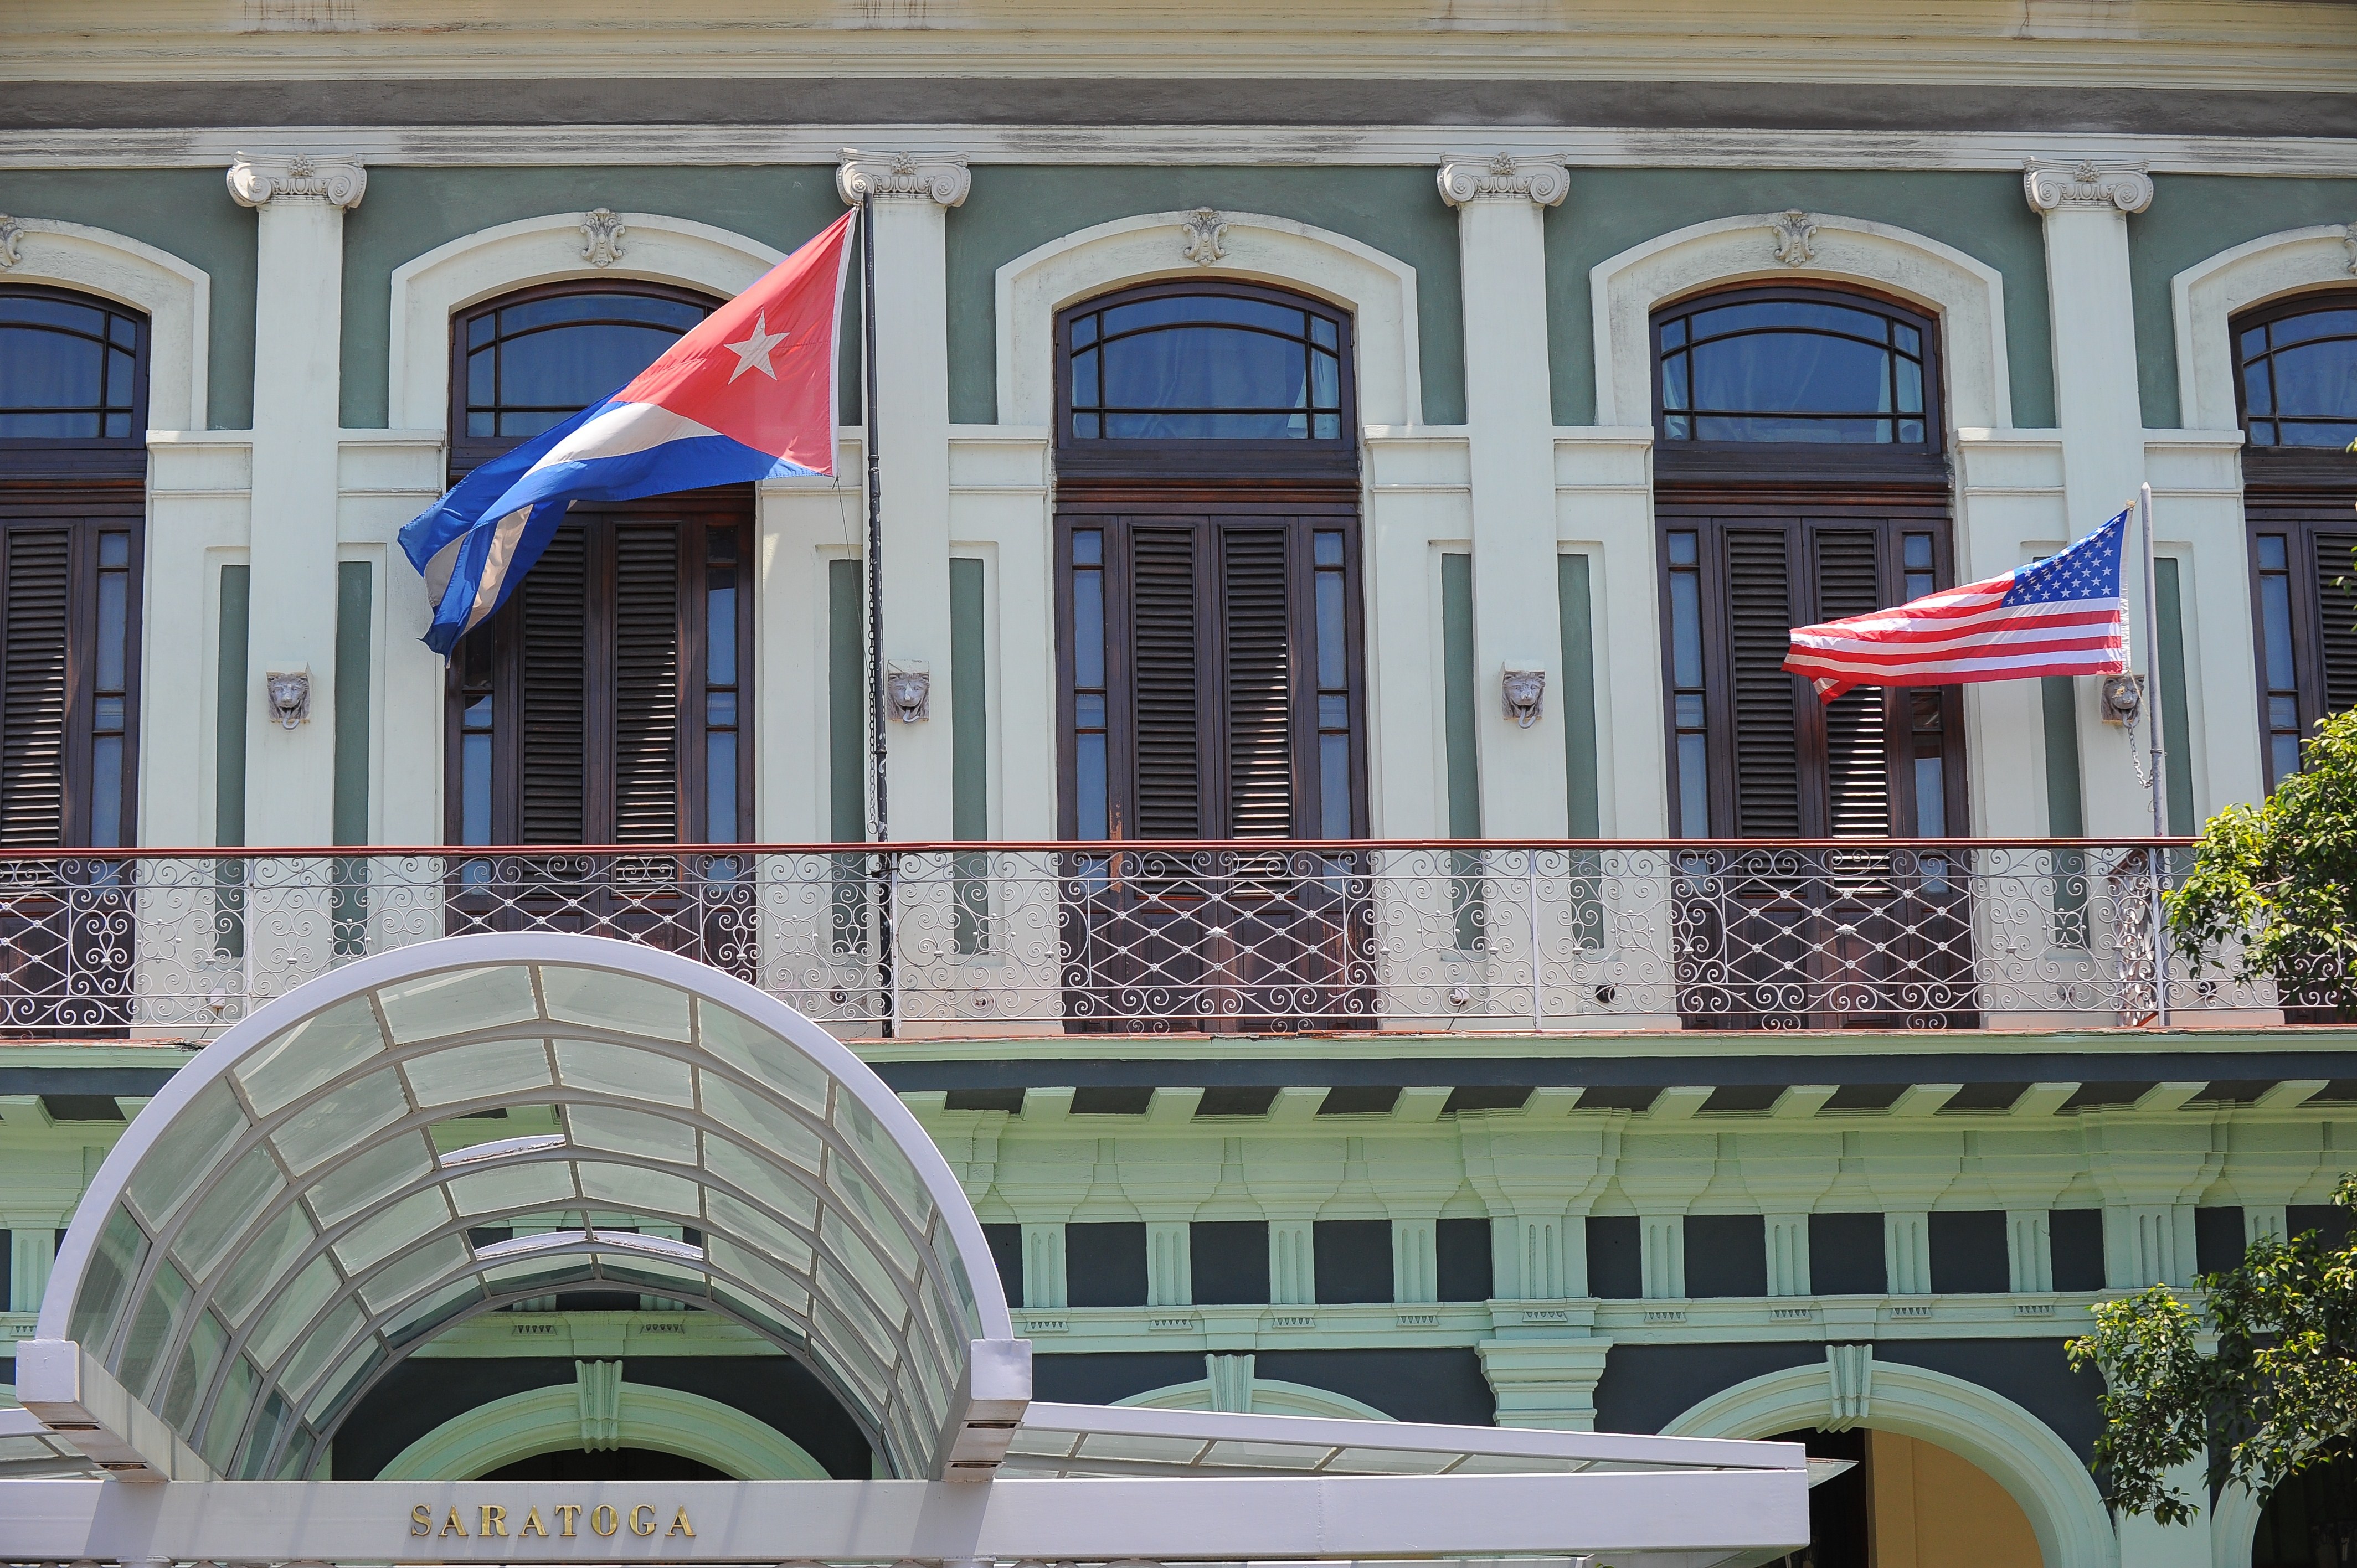 Banderas de EEUU y Cuba en el balcón de un hotel en la Habana, el 13 de abril de 2015. (YAMIL LAGE/AFP/Getty Images)